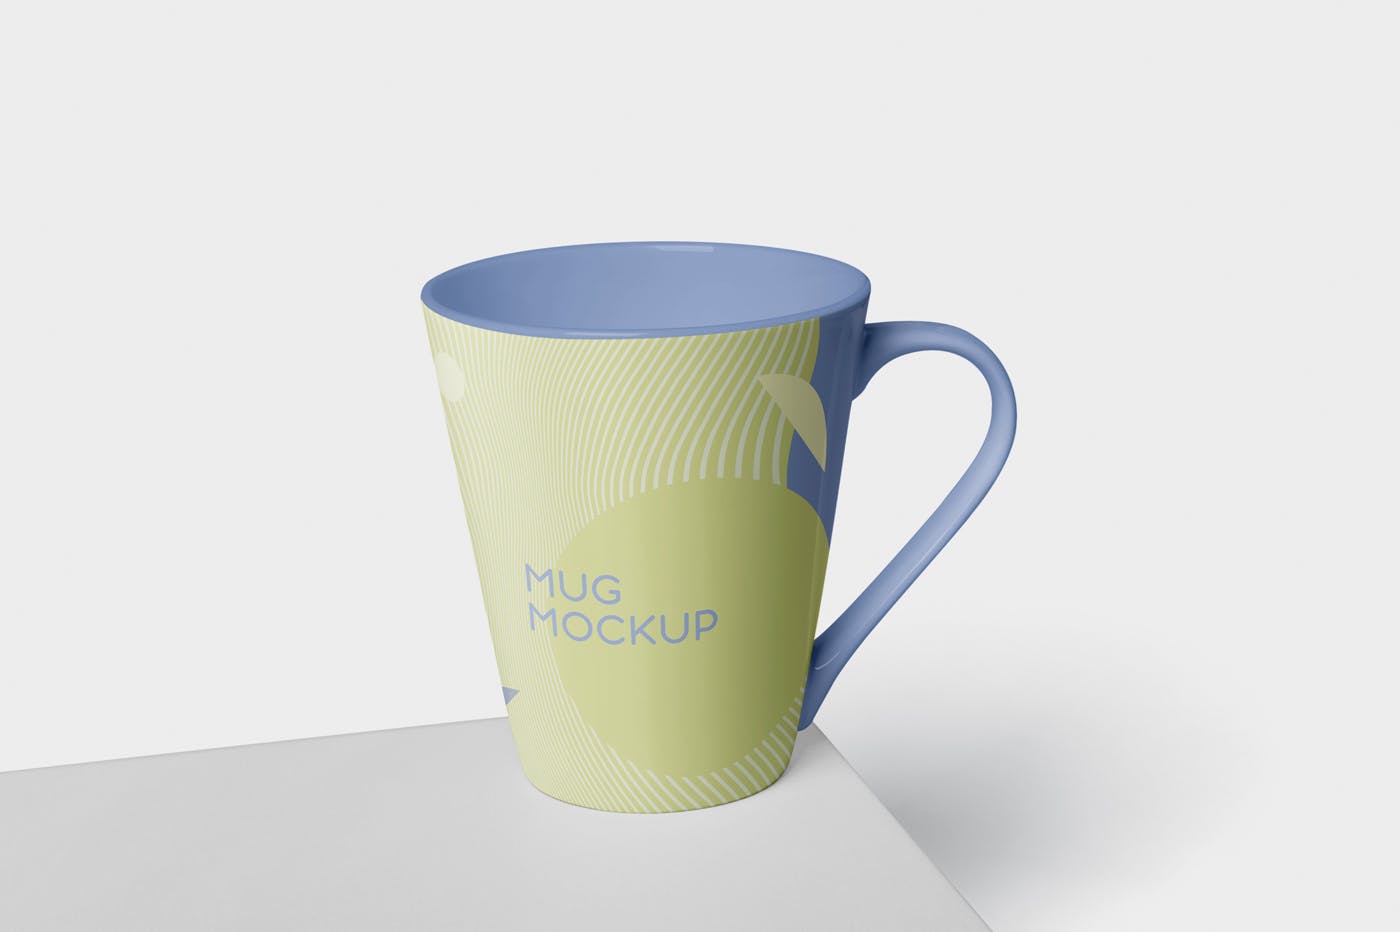 锥形马克杯图案设计蚂蚁素材精选 Mug Mockup – Cone Shaped插图(2)